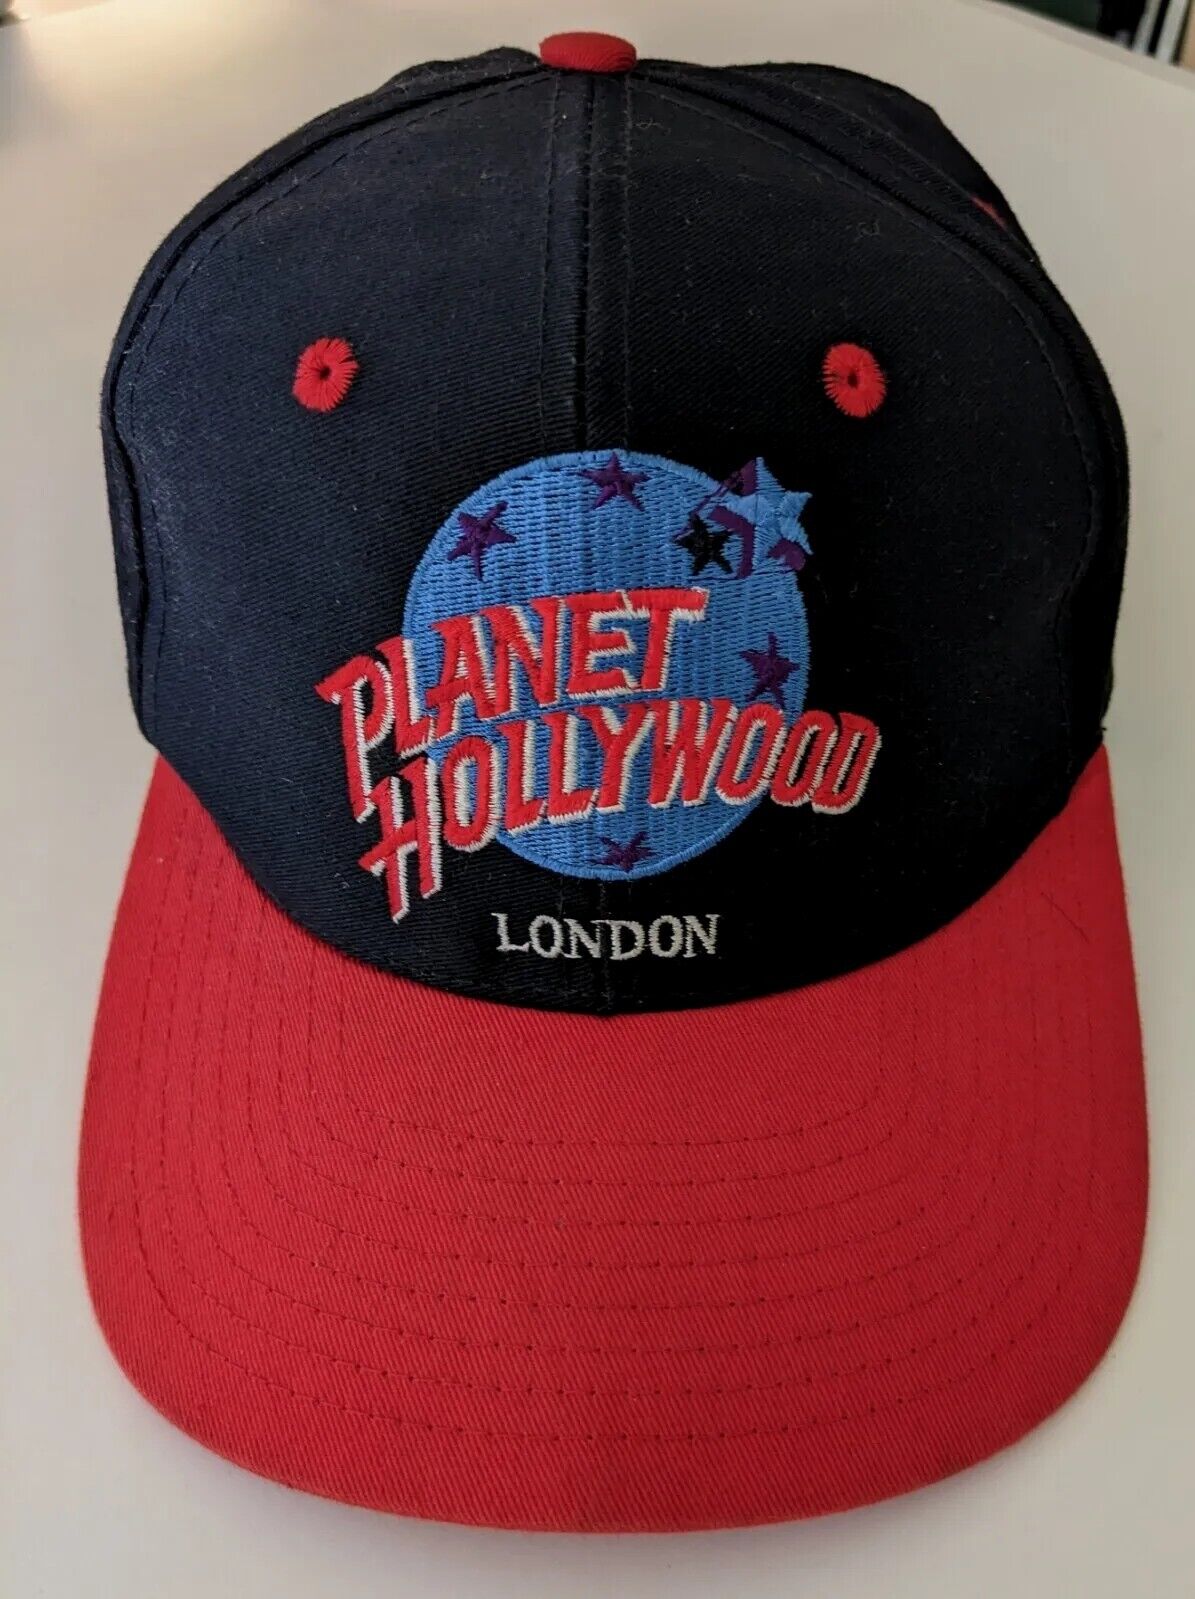 RARE Original Planet Hollywood London UK - Hat Cap Black Red Bill  LOOK